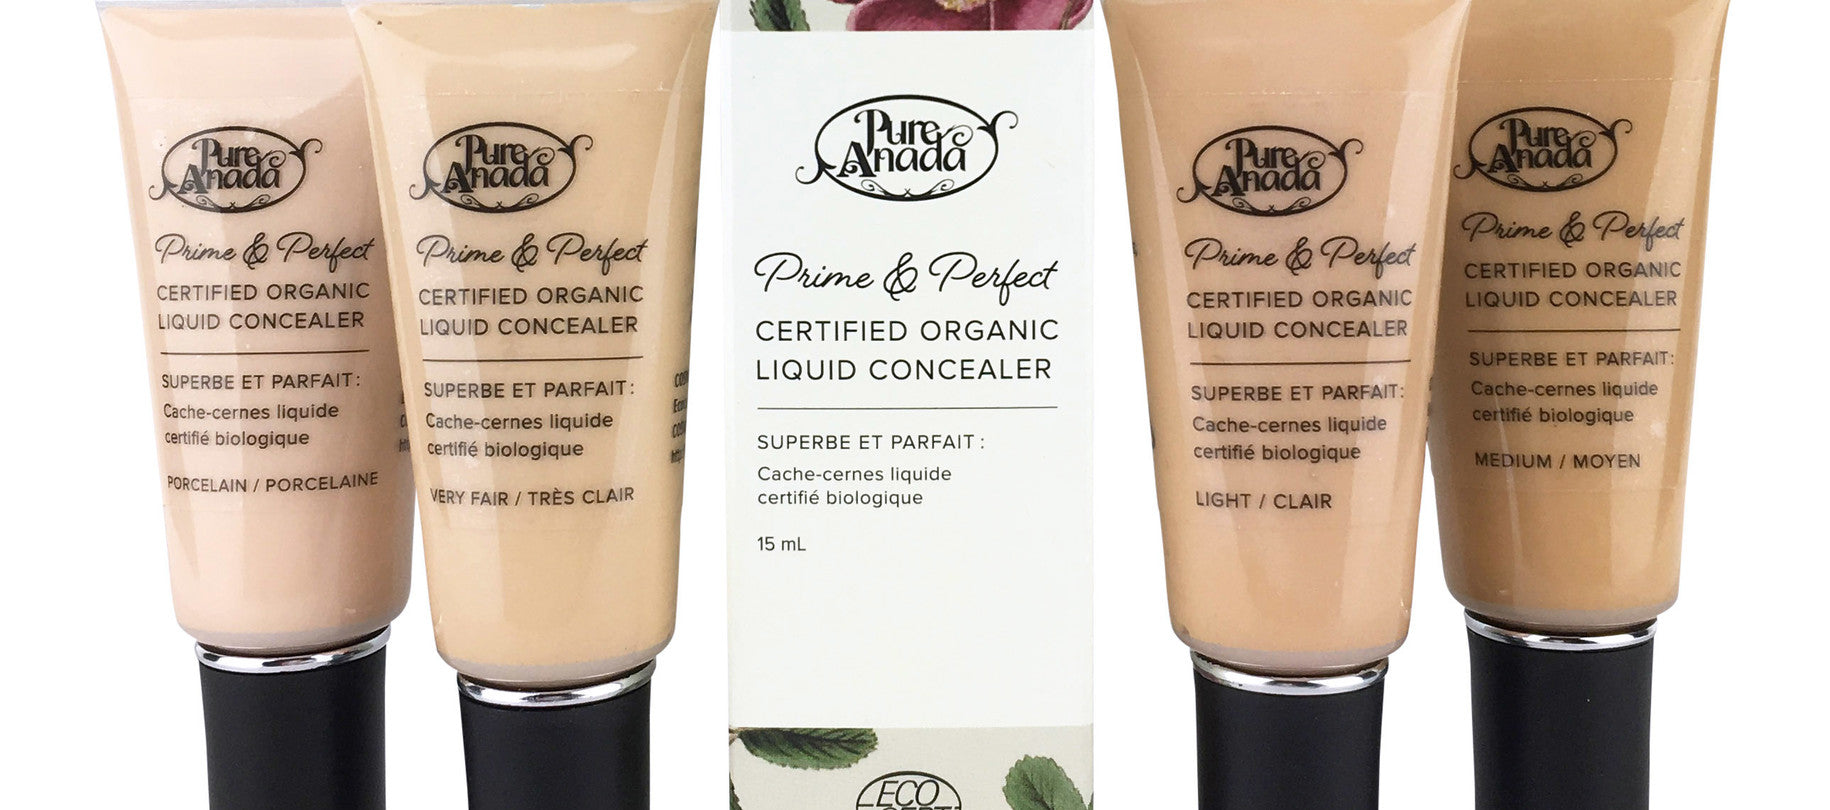 Pure Anada - Prime & Perfect Liquid Concealer